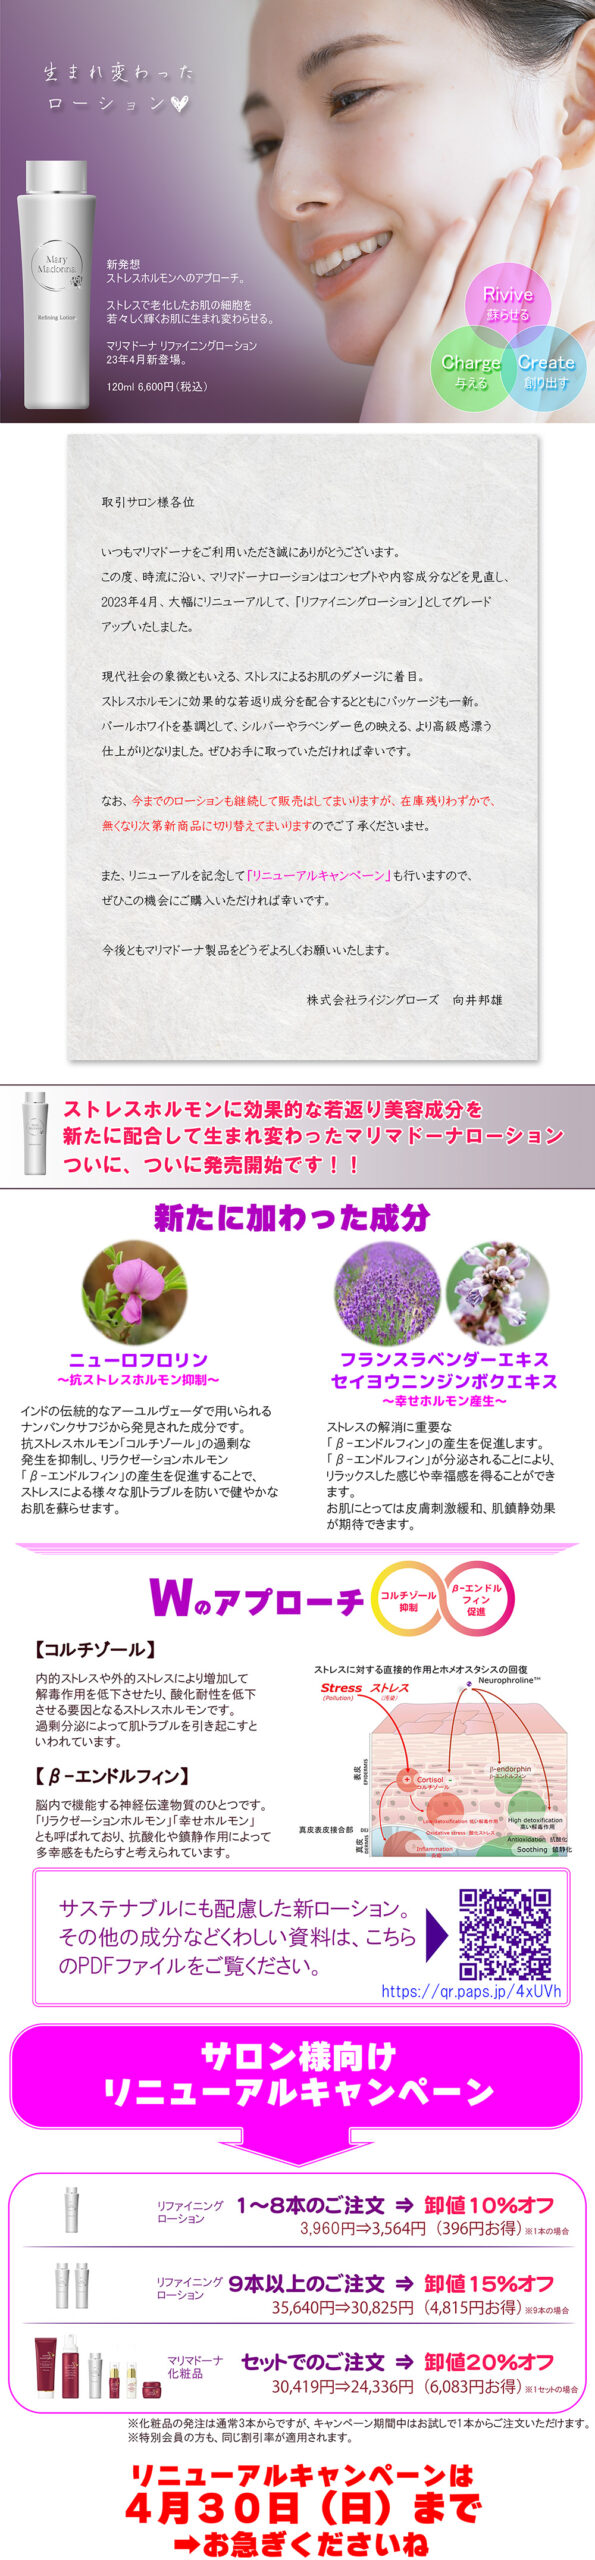 マリマドーナ化粧品 公式ウェブサイト